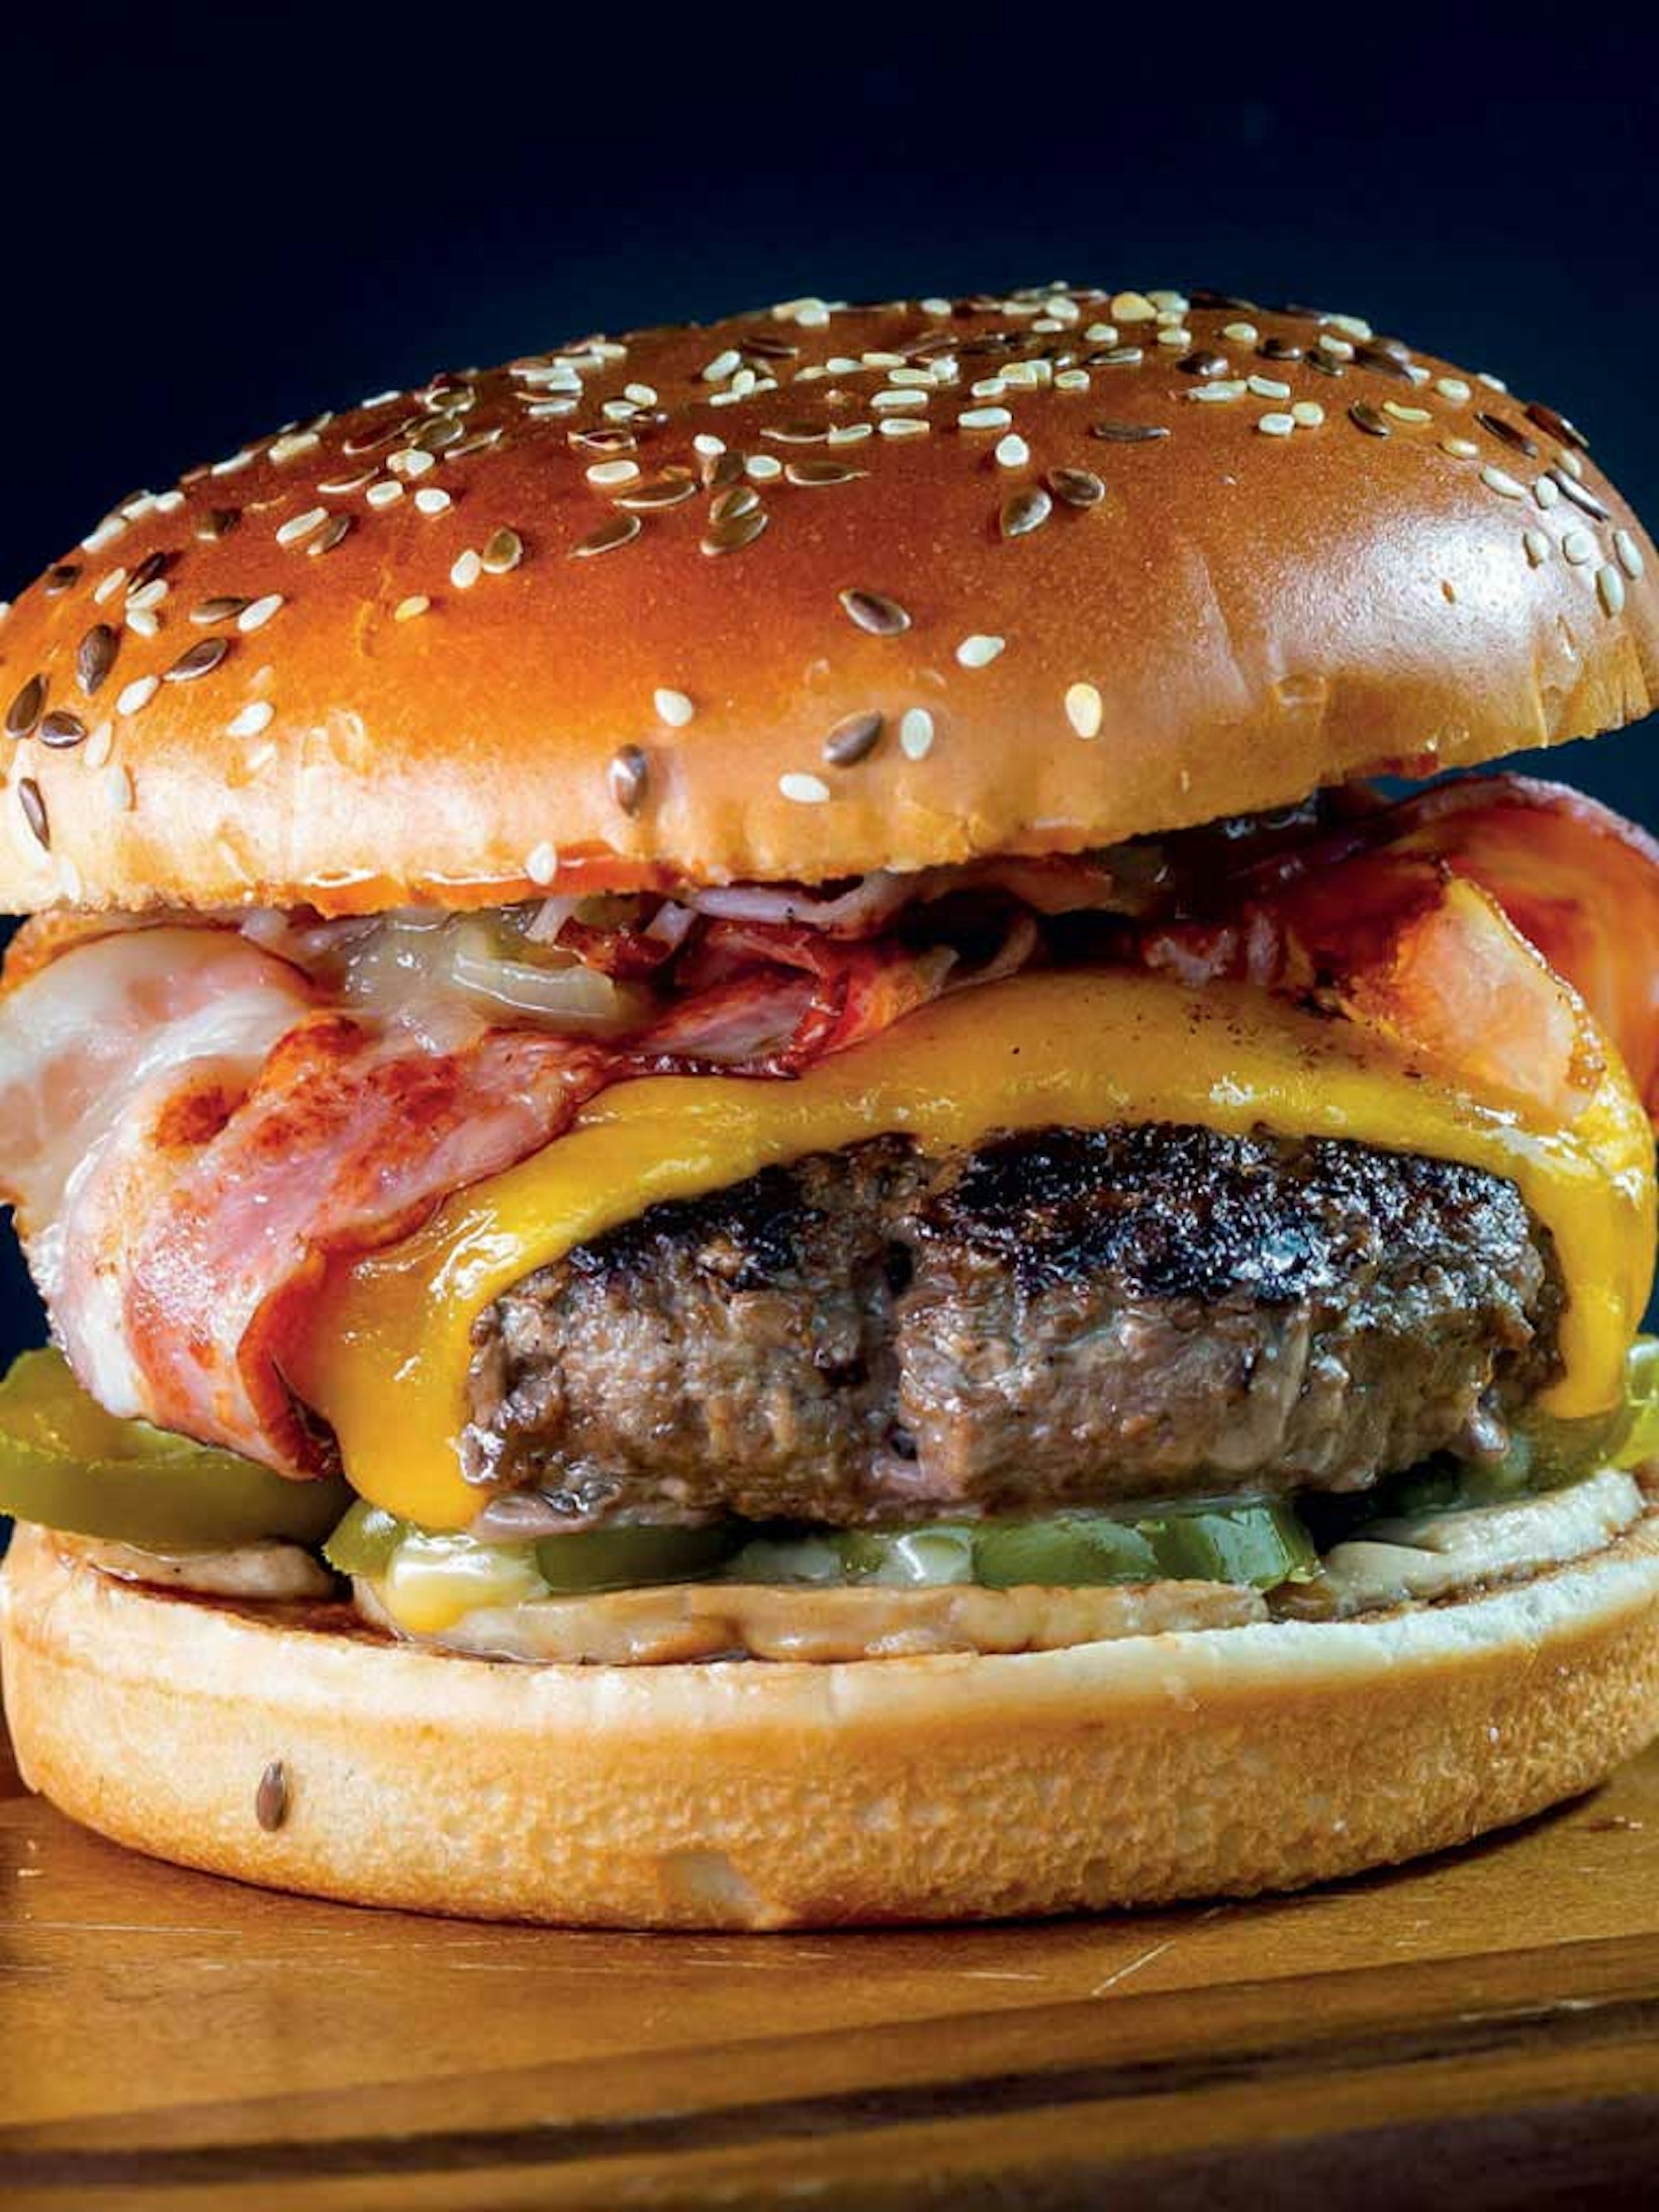 Contact Grill Bacon Cheeseburger recipe | House Blog